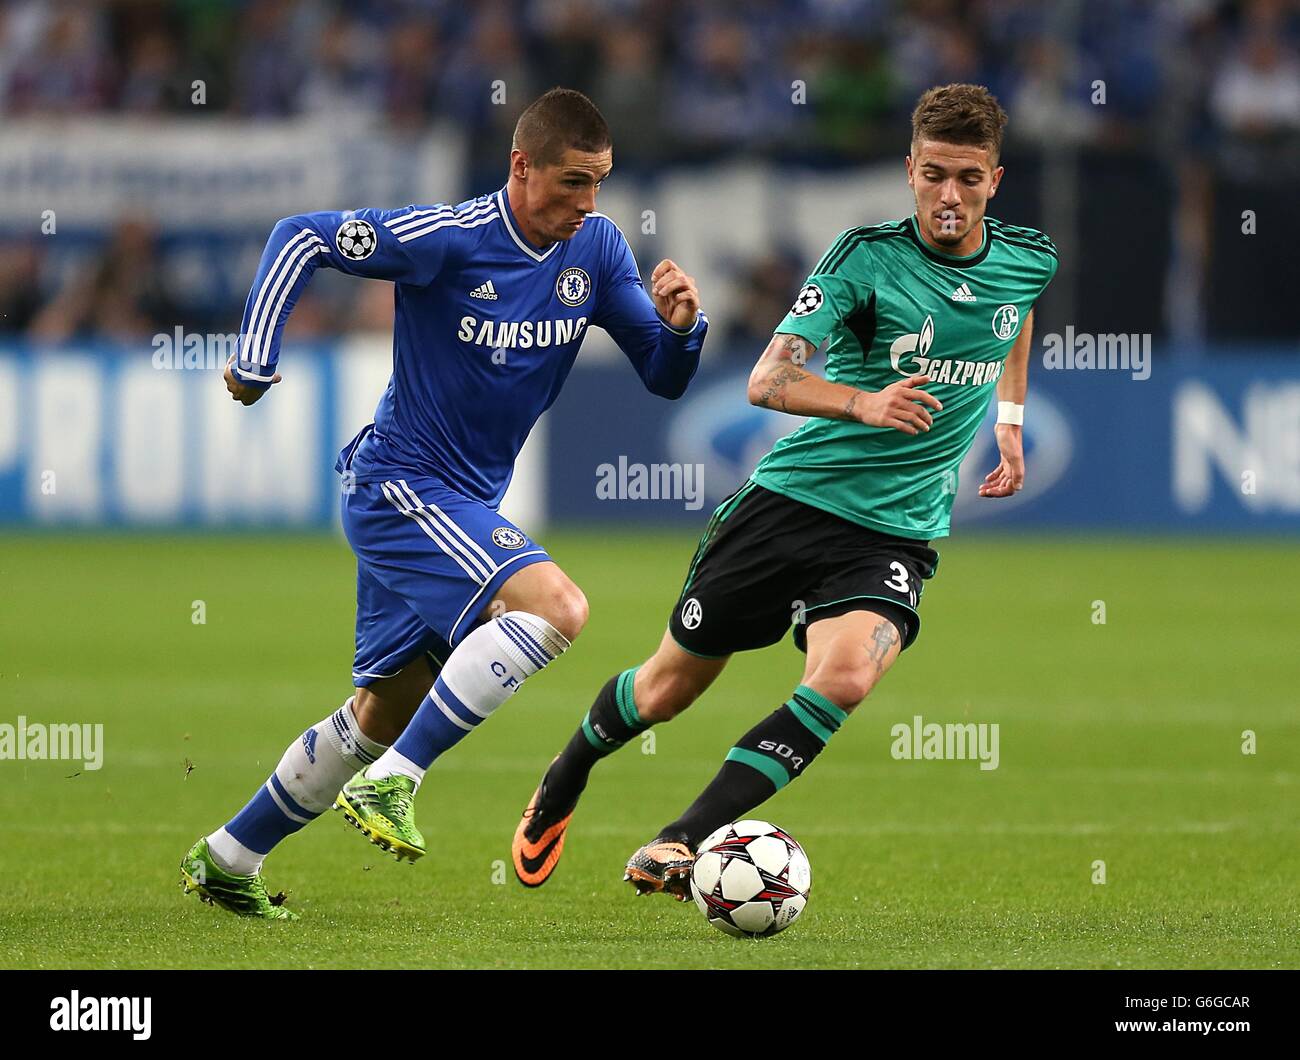 Soccer - UEFA Champions League - Group E - Schalke 04 v Chelsea - Veltins-Arena. Chelsea's Fernando Torres (left) and Schalke 04's Roman Neustadter in action Stock Photo